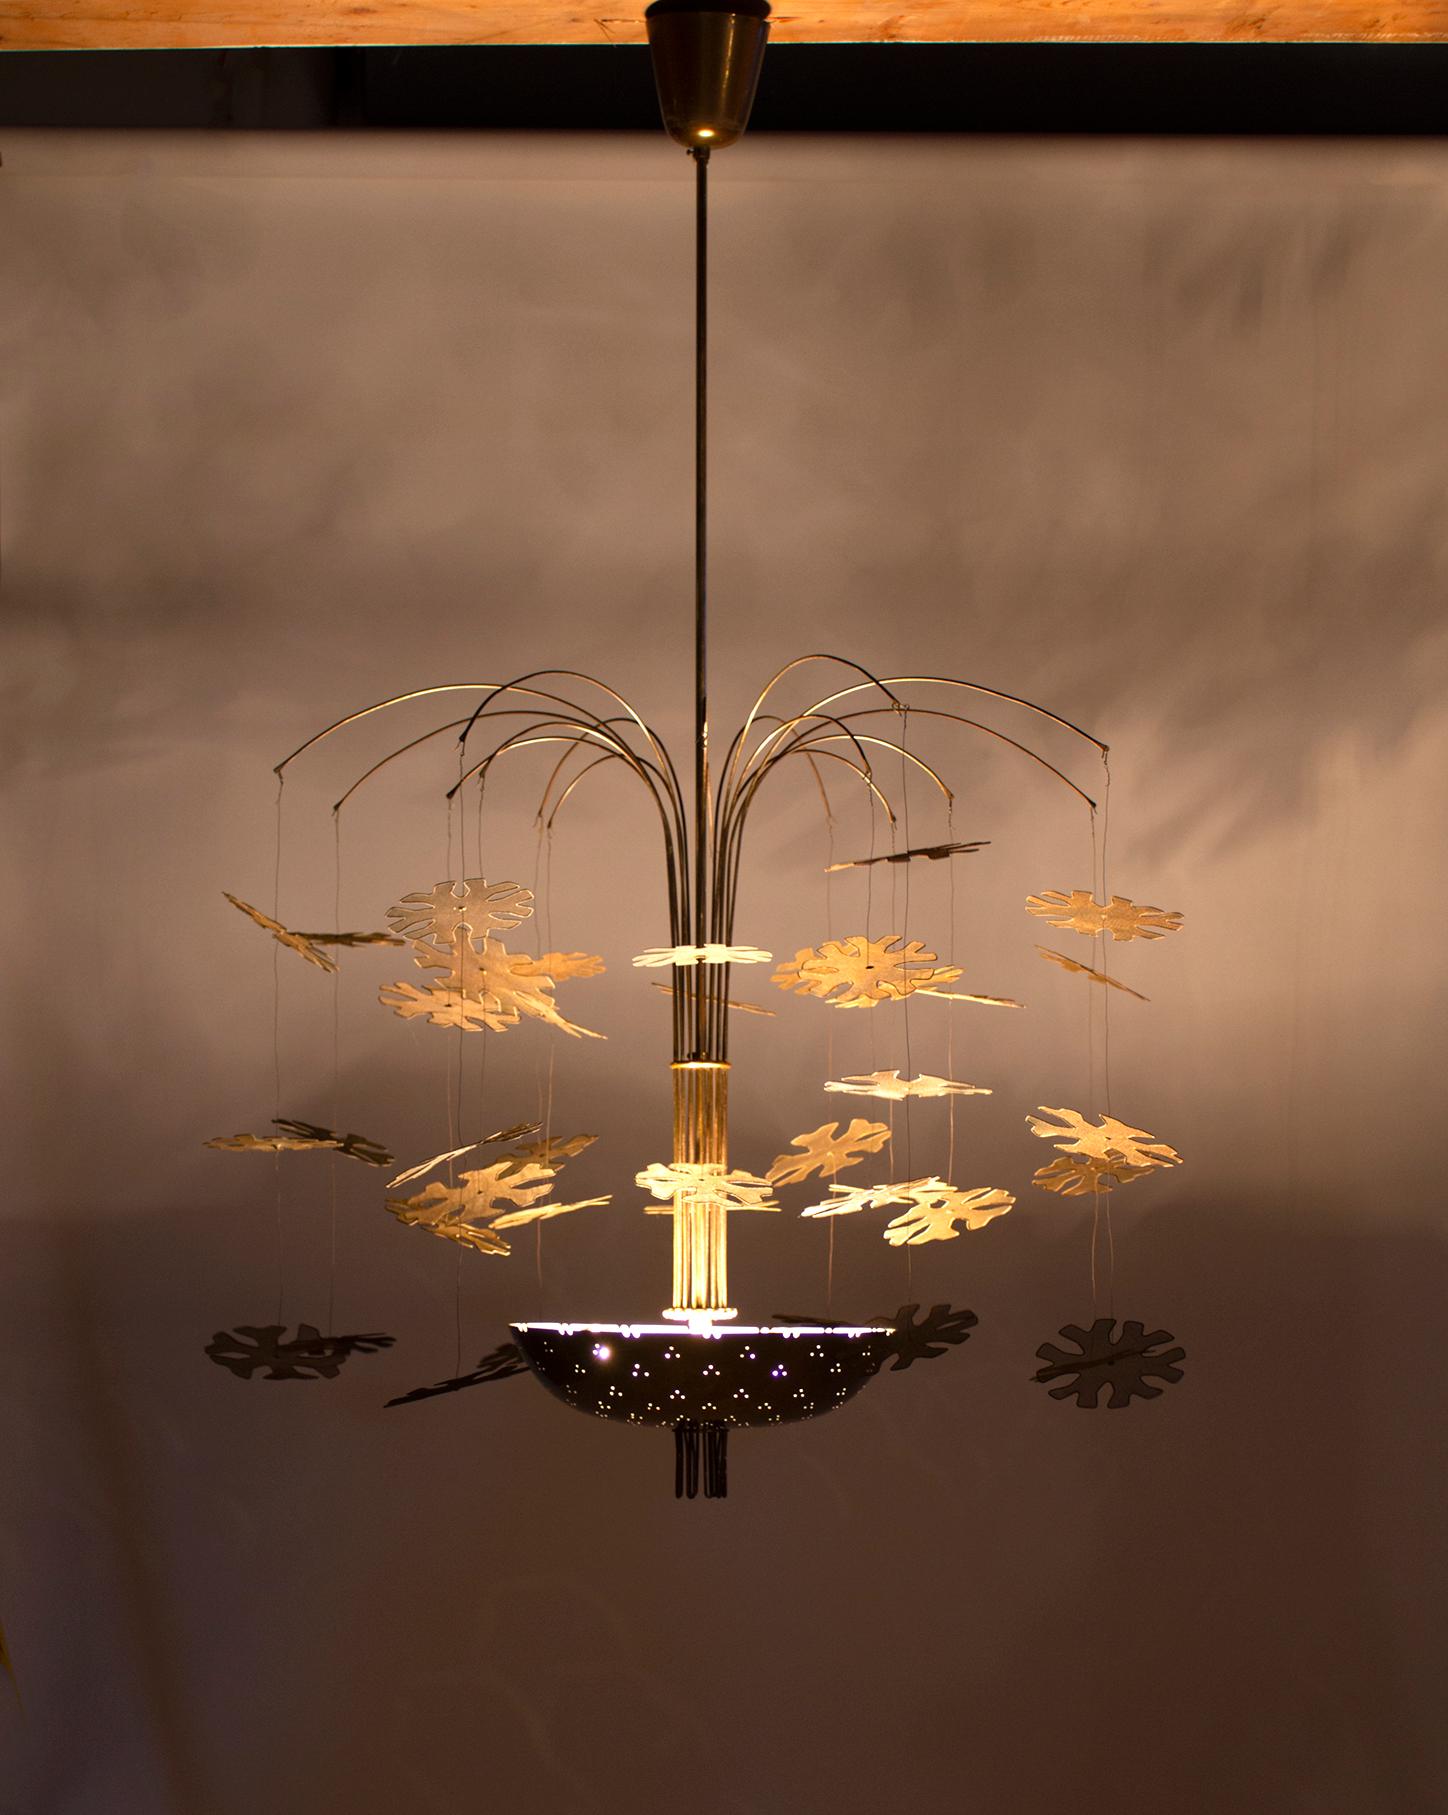 Der skandinavisch-moderne Kronleuchter Modell 9041 Snowflake:: entworfen von Paavo Tynell für Taito Oy:: ist der Inbegriff der skandinavischen Moderne. Dieser atemberaubende Kronleuchter wirft einen warmen Lichtschein aus der kunstvoll perforierten